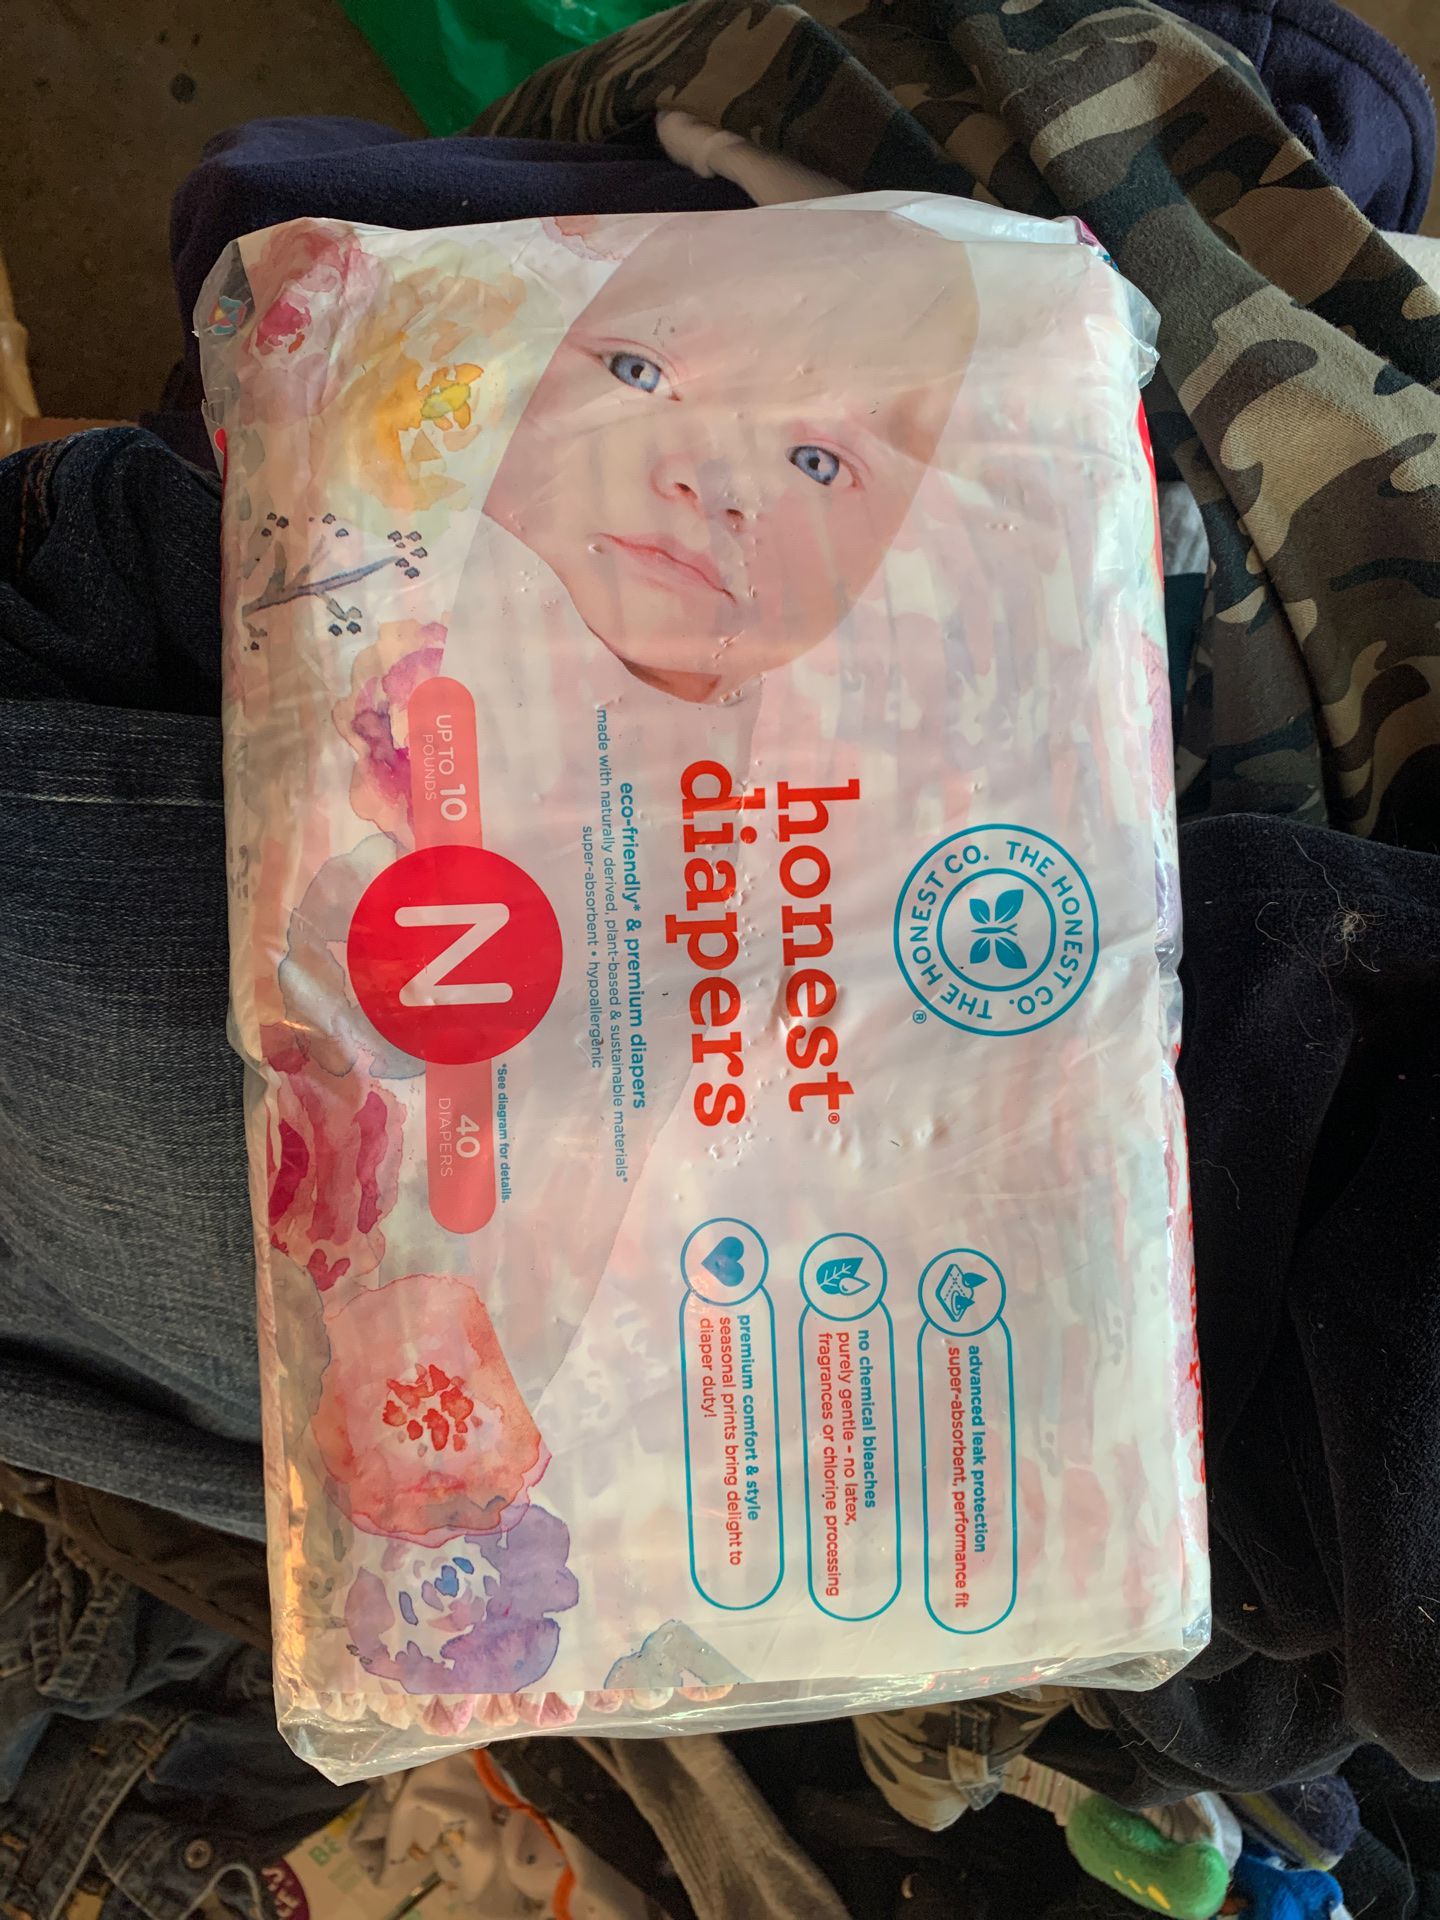 Newborn honest diapers